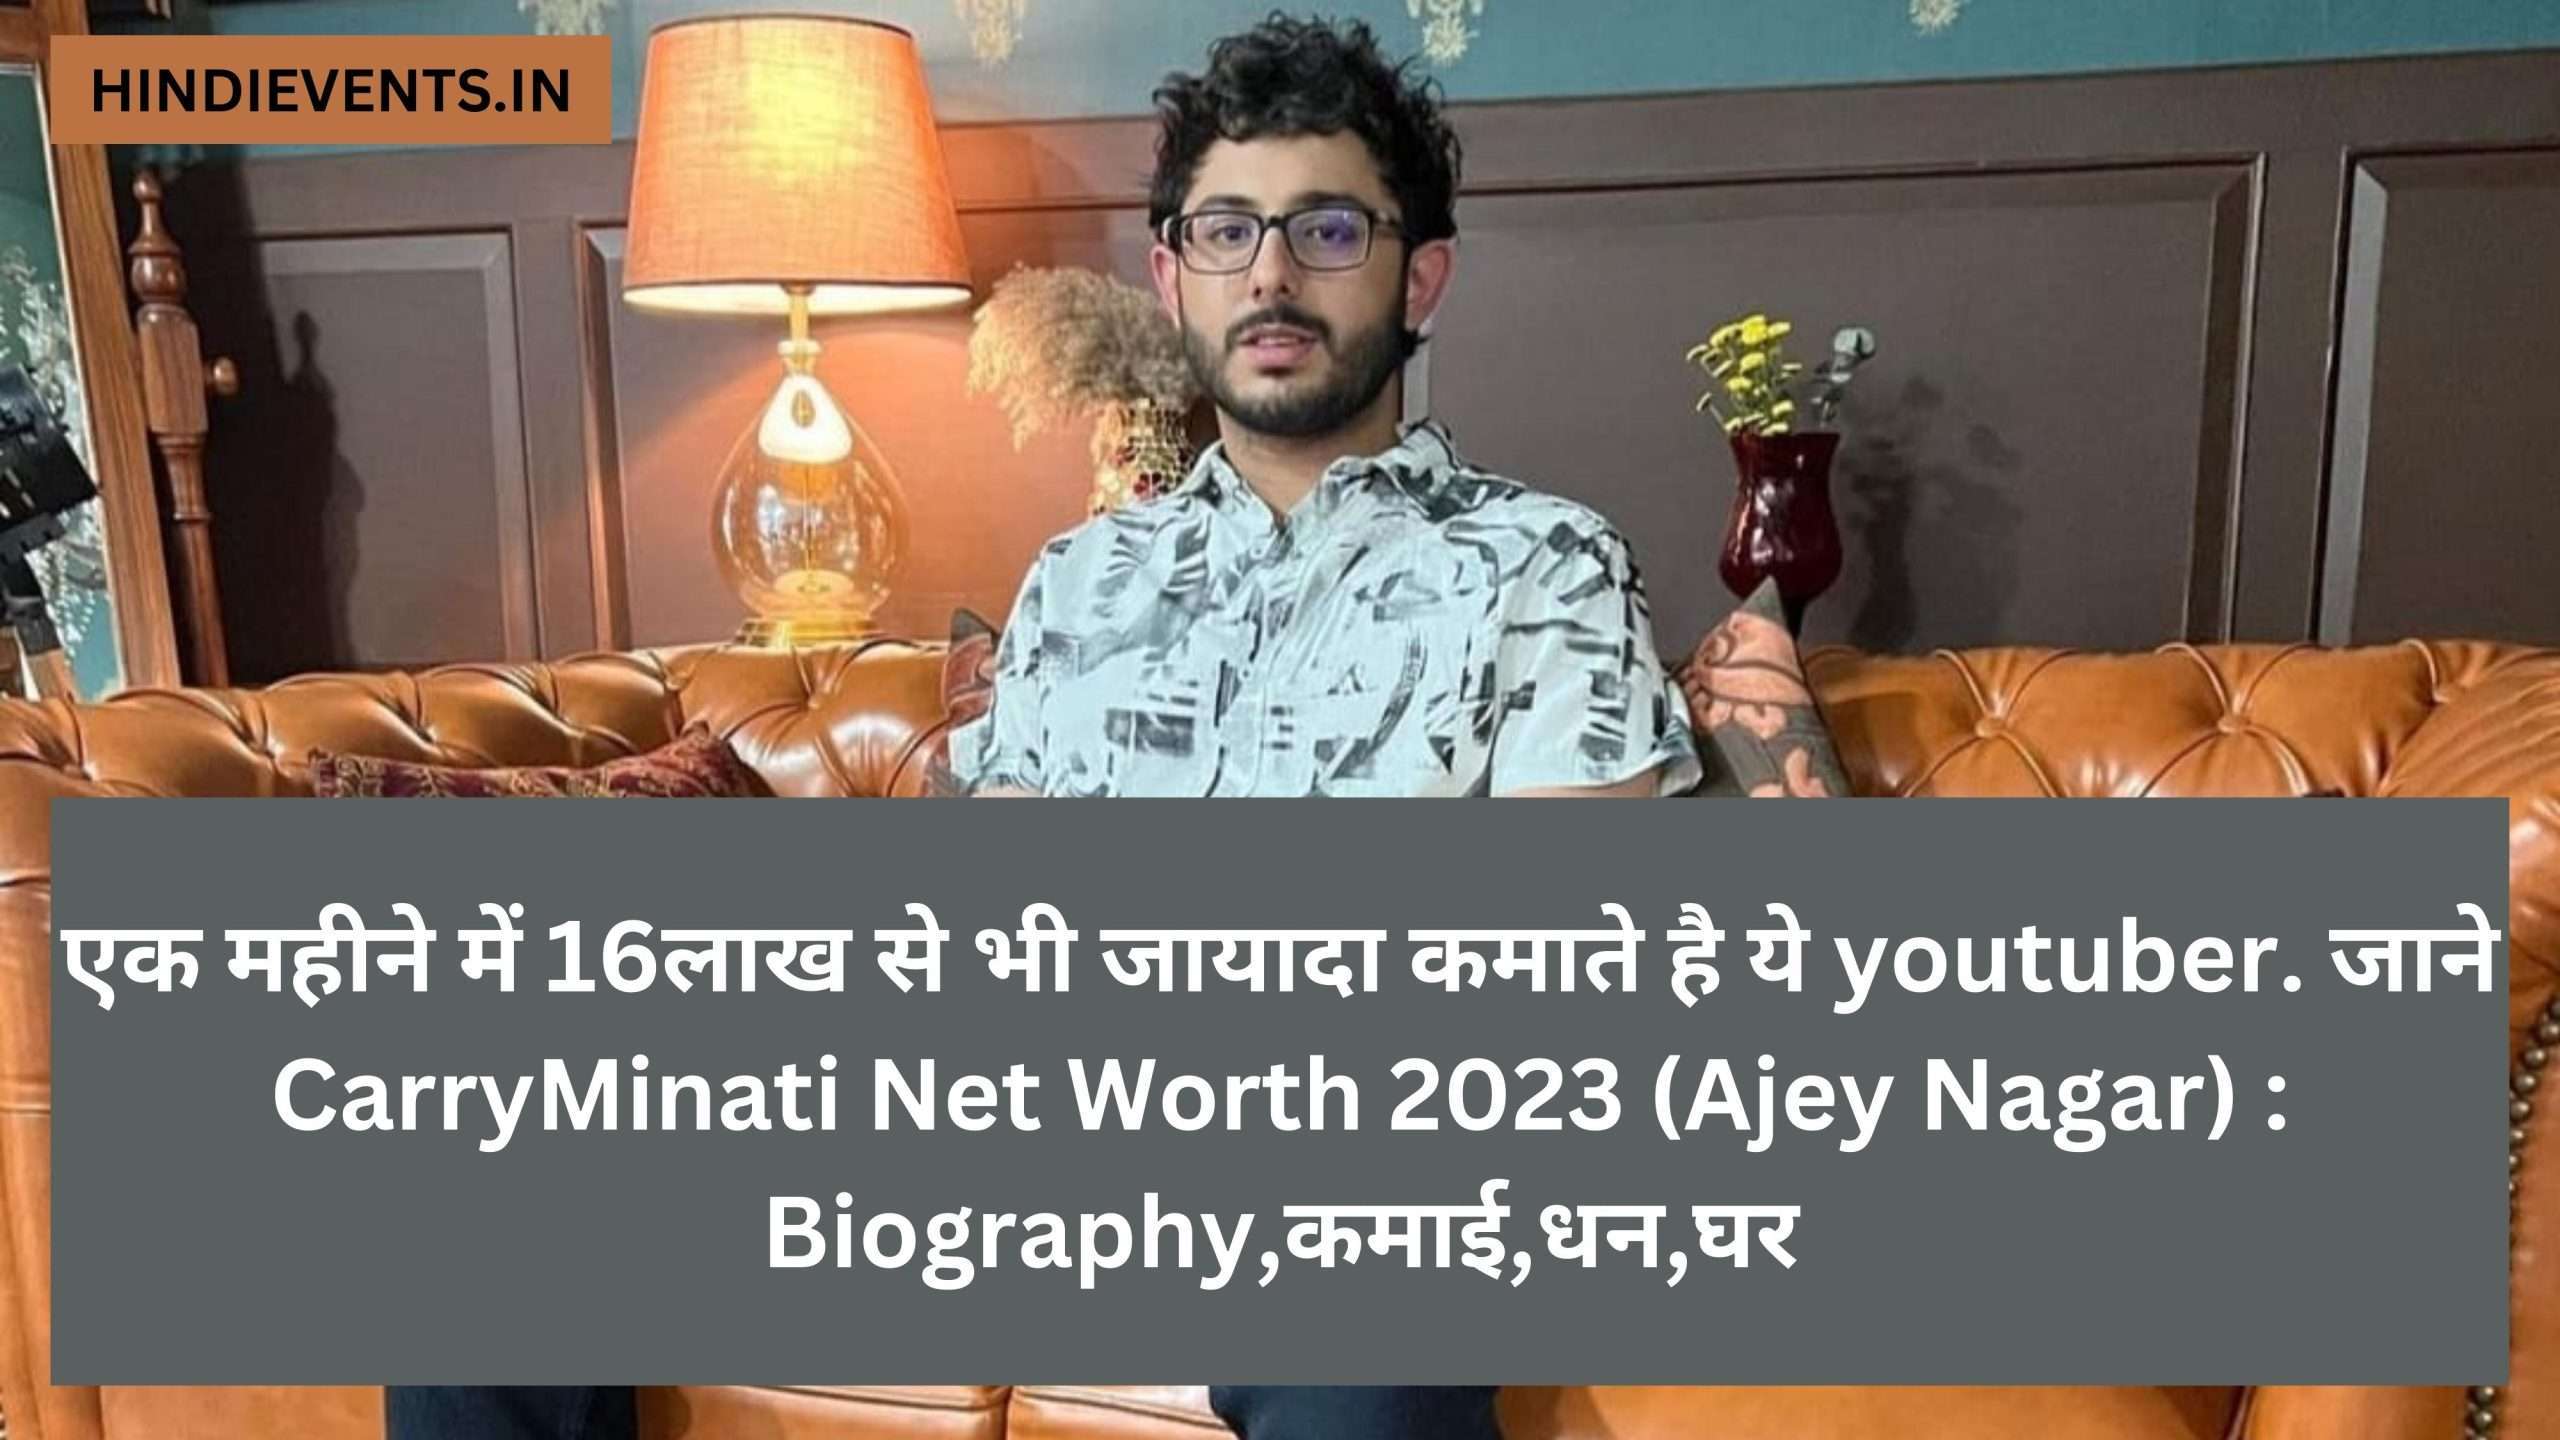 CarryMinati Net Worth 2023 (Ajey Nagar) : Biography,कमाई,धन,घर